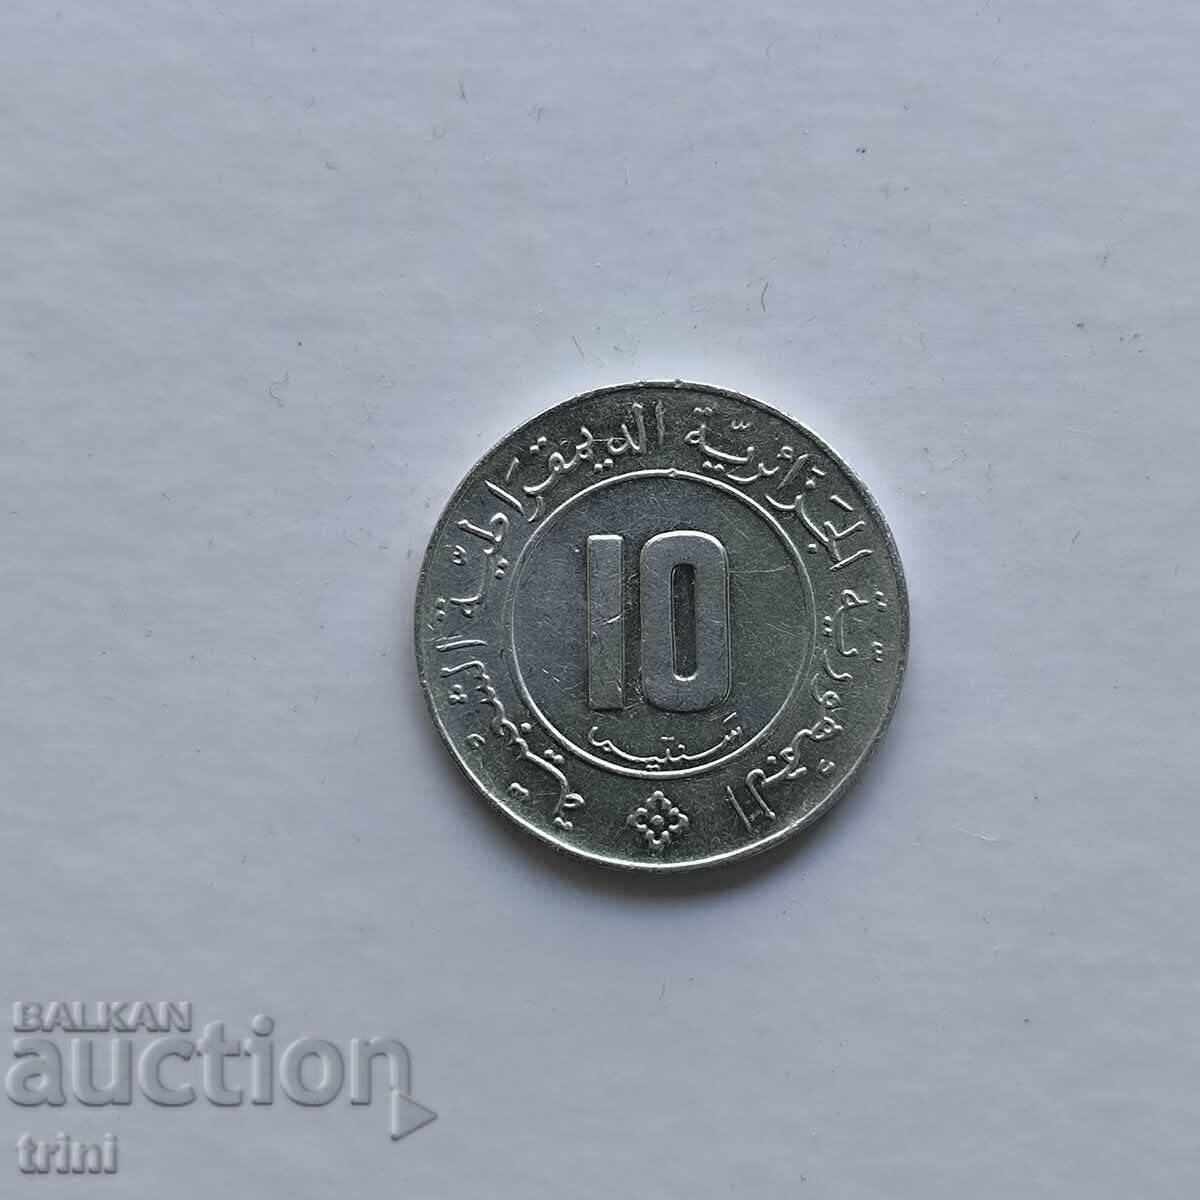 Algeria 10 centimeters 1984